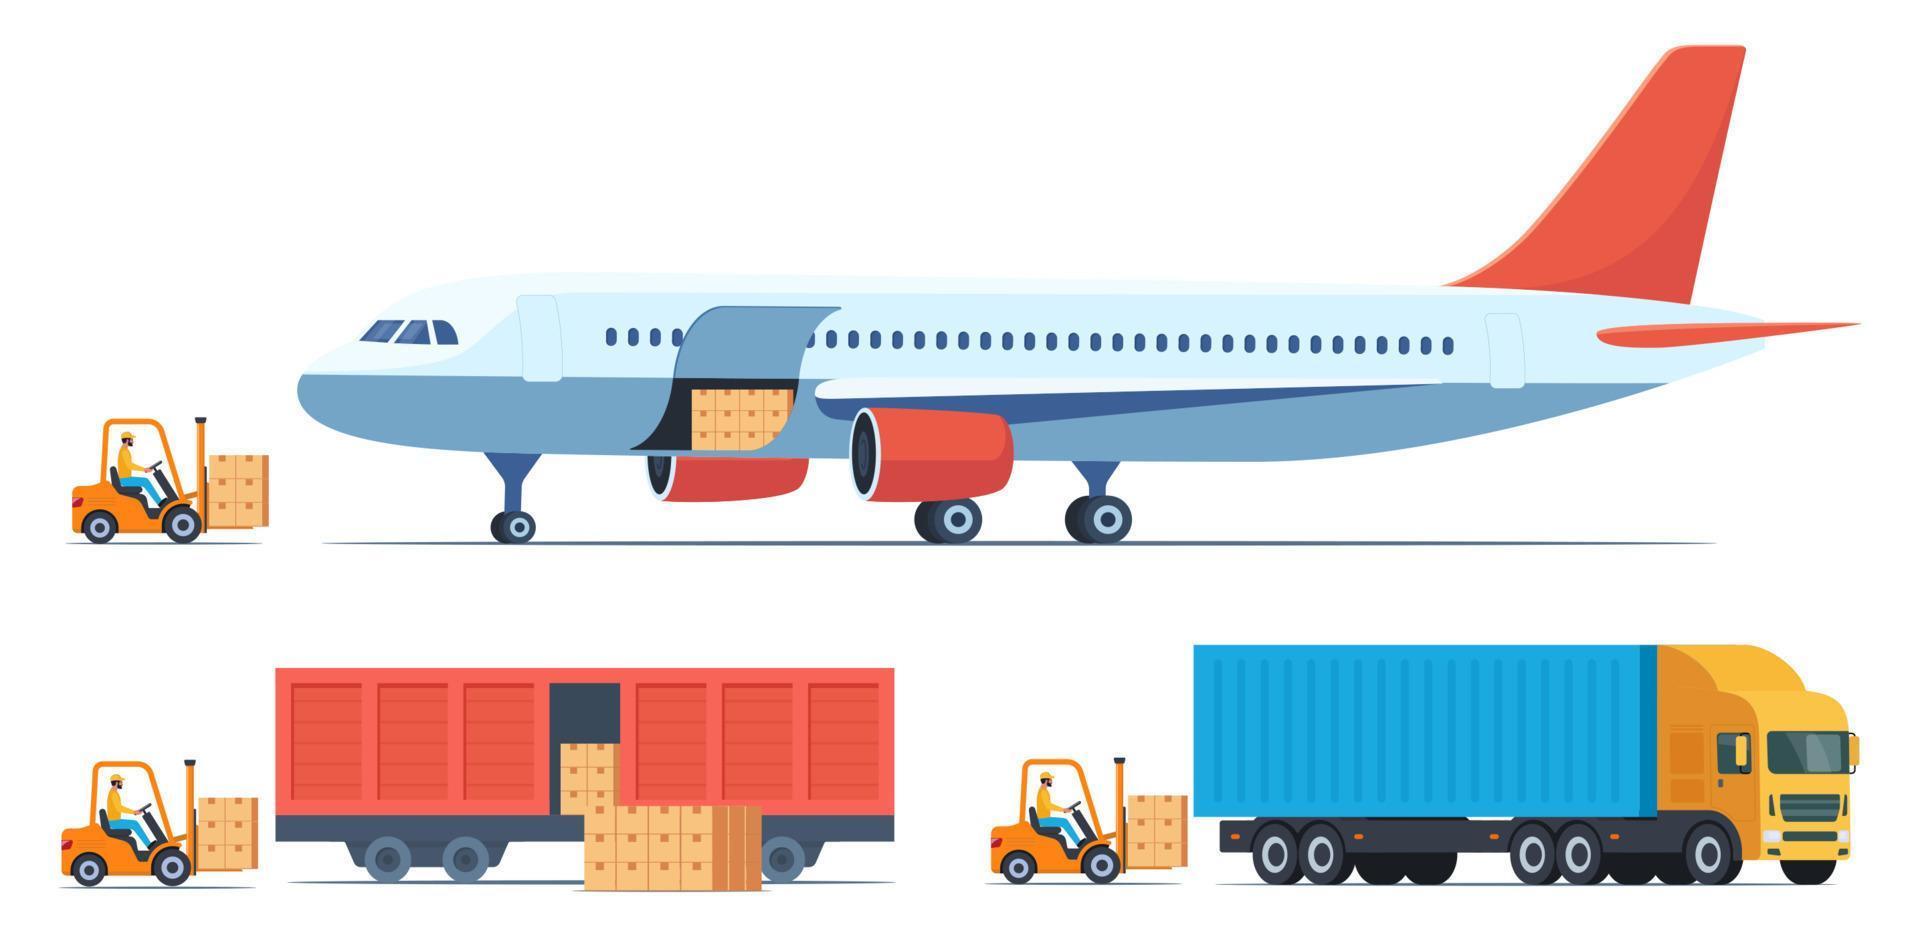 caixas de carregamento com mercadorias em diferentes tipos de transporte de carga. avião de carga, trem, caminhão e empilhadeira carregam carga neles. carga e entrega, logística e tráfego de mercadorias, ilustração vetorial. vetor